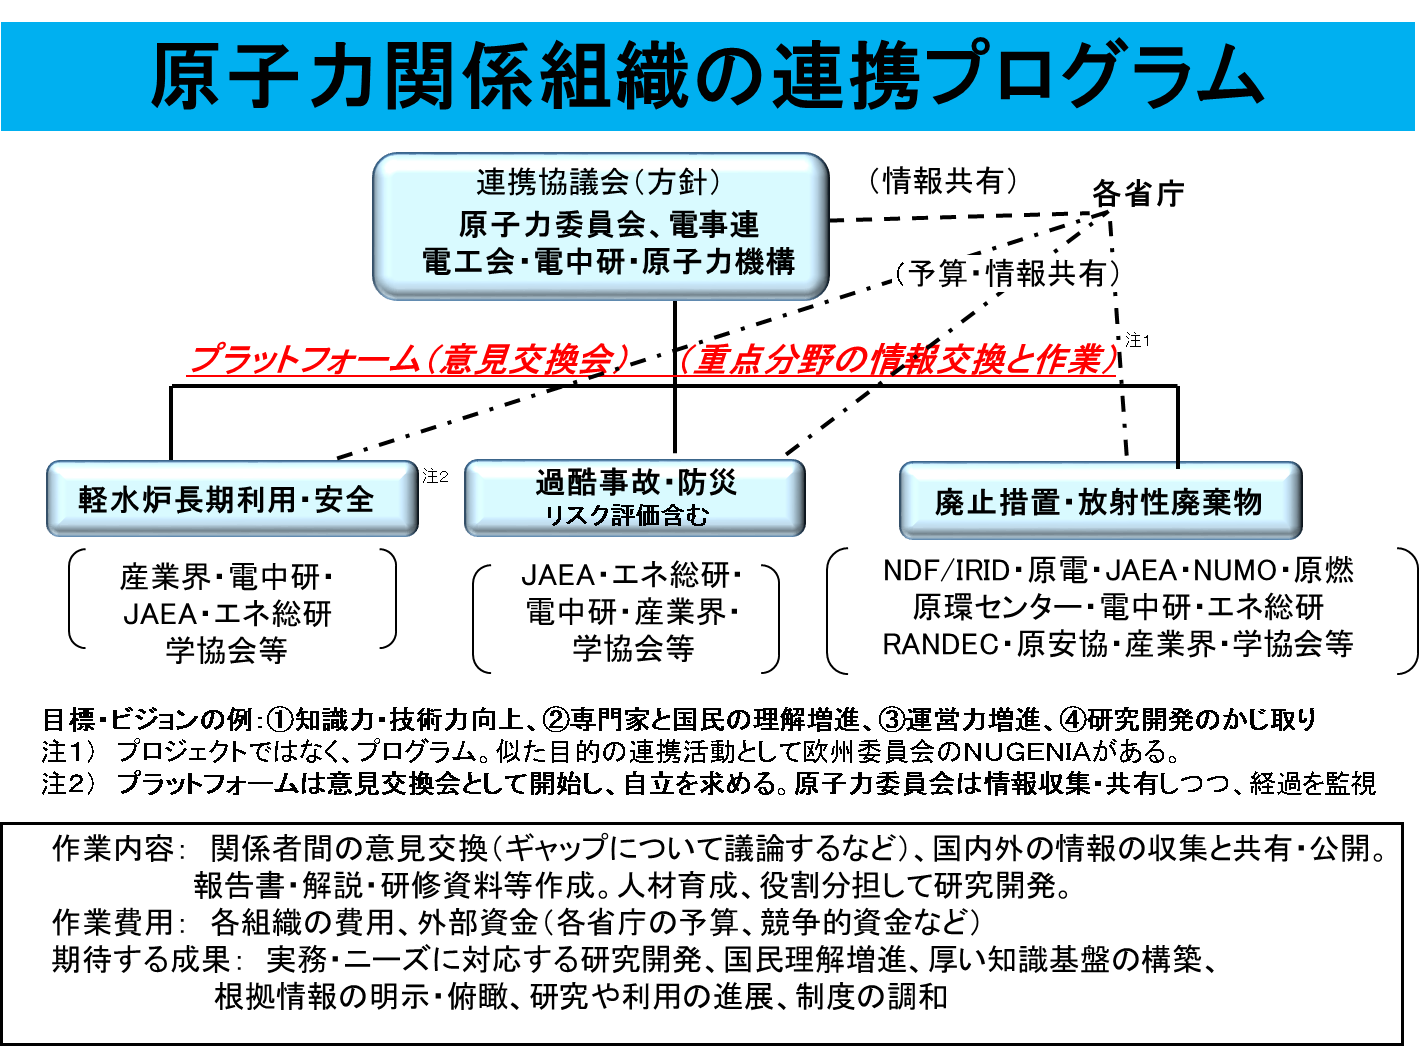 図 8-1　原子力関係組織の連携プログラム